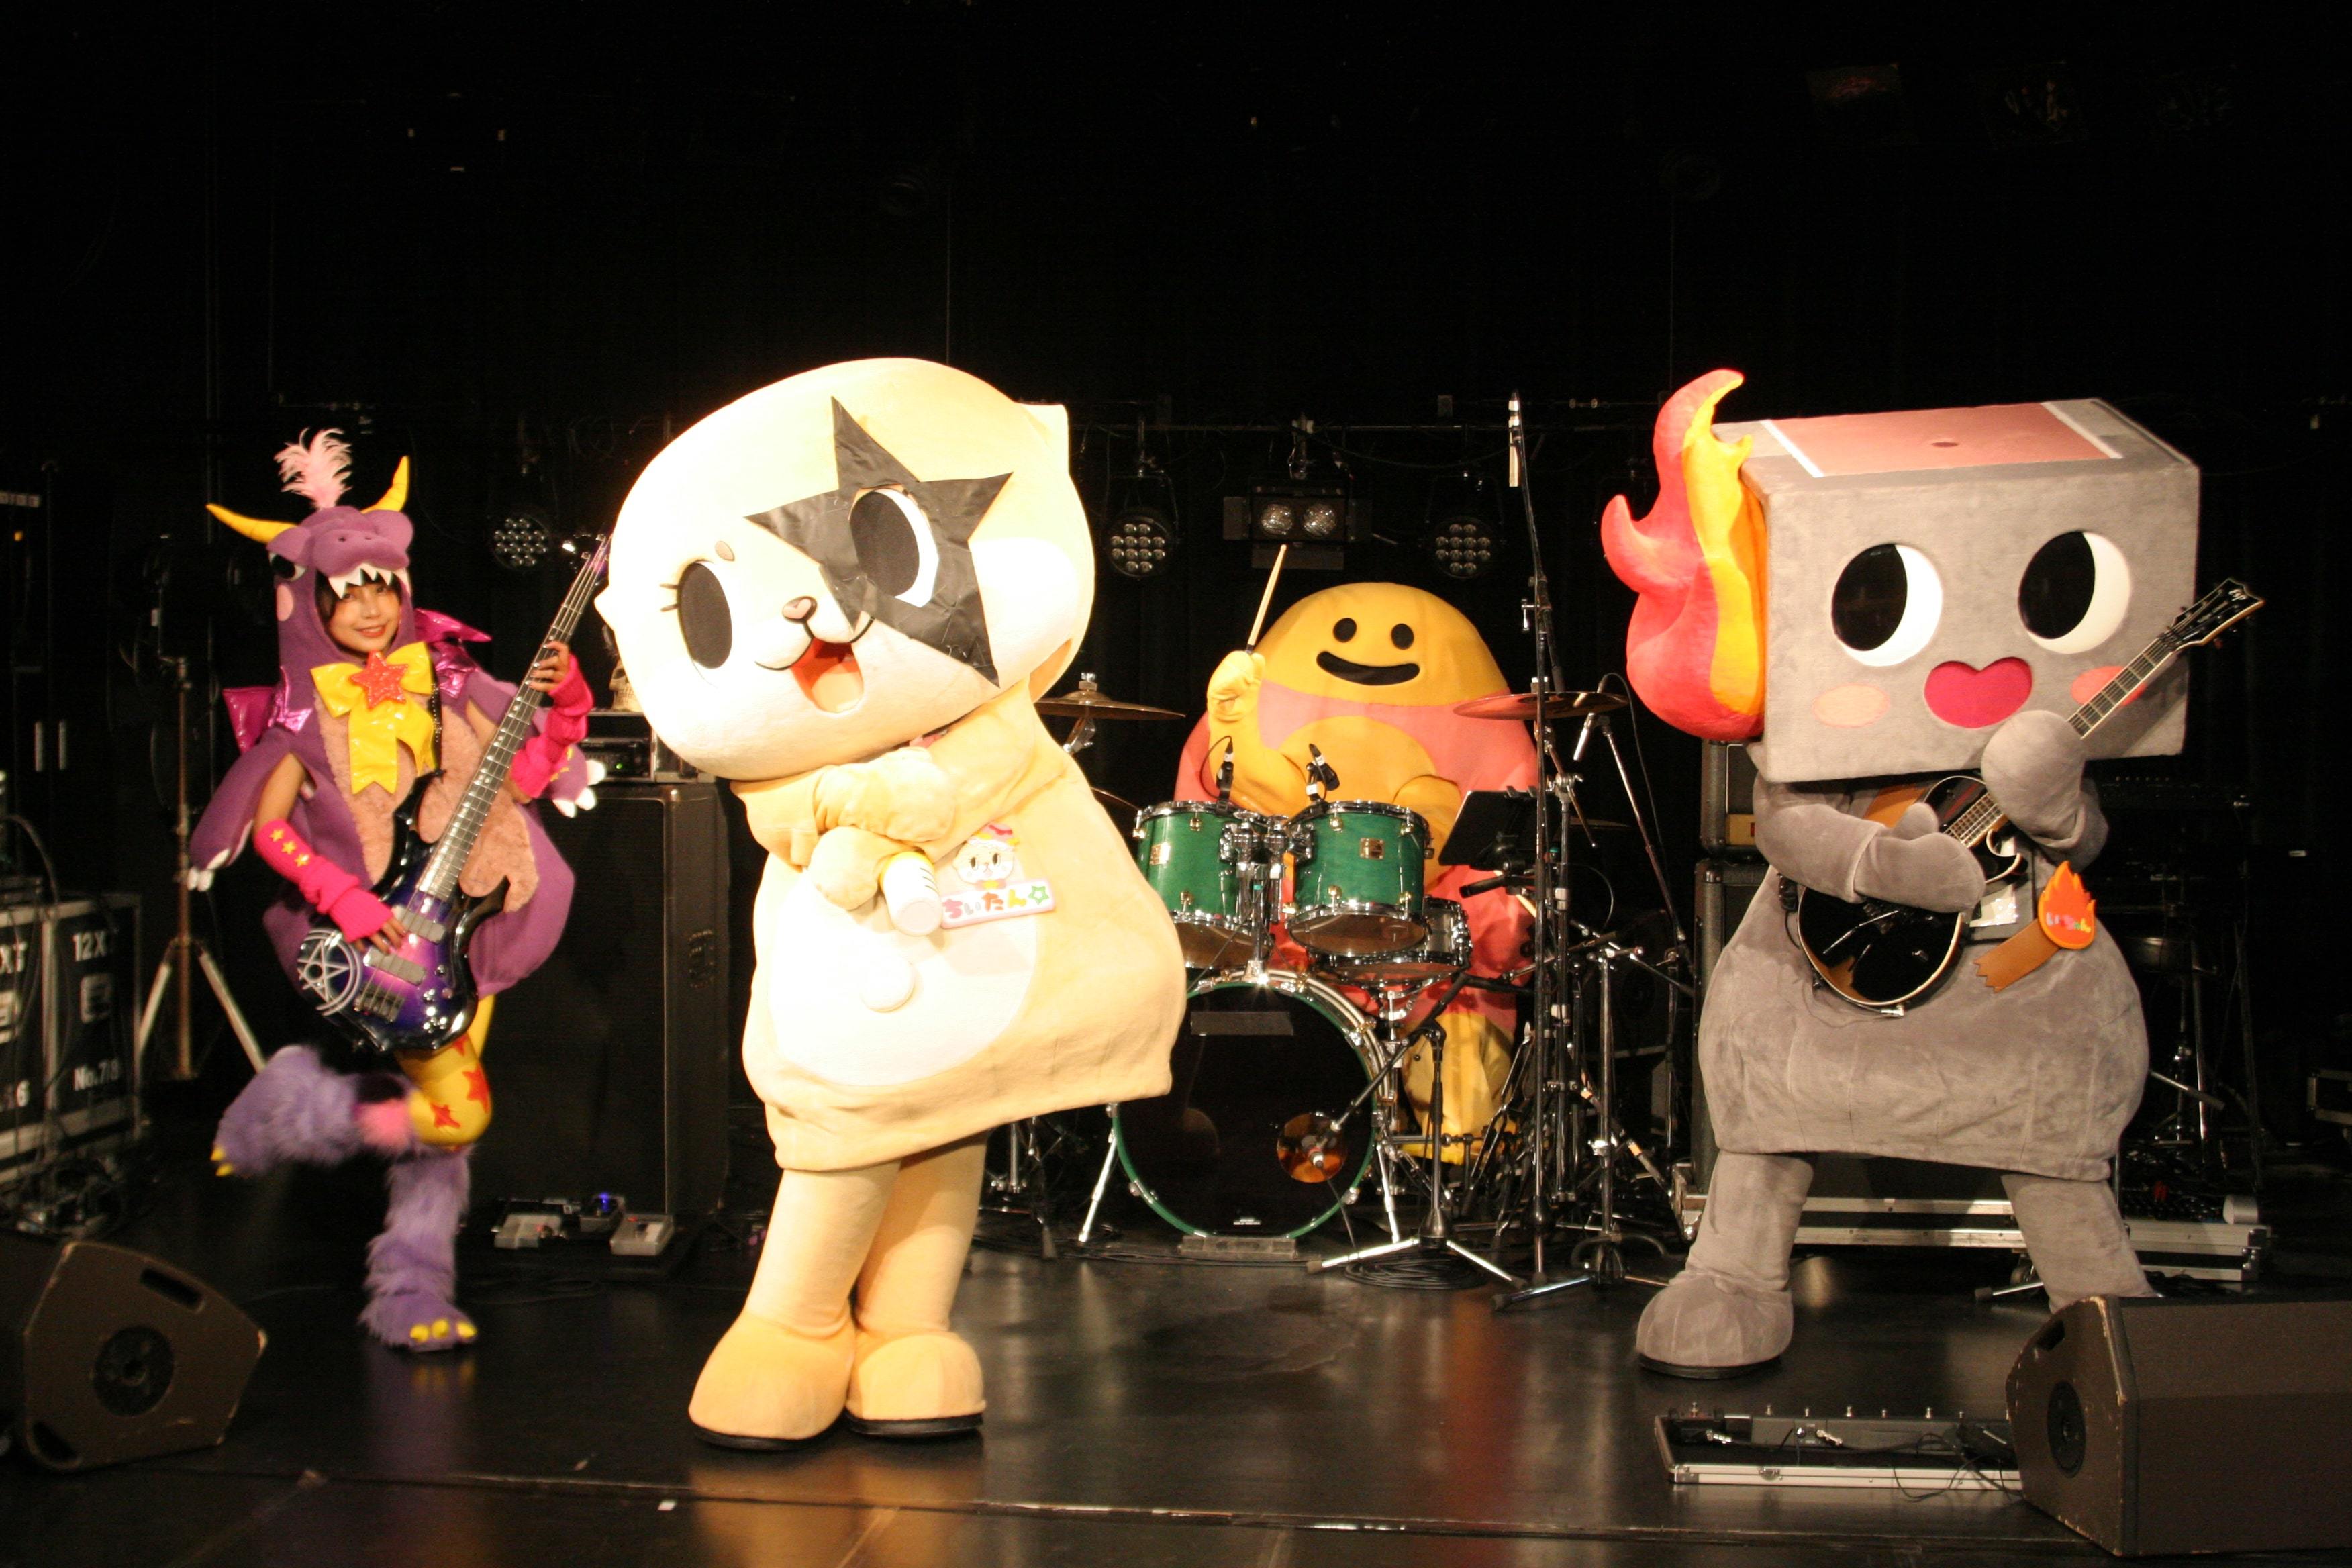 【MUSIC ON! TV（エムオン!）】
9人組ガールズグループ、NiziU
2022年に行われた自身初の全国ツアーから、
Aichi Sky Expo公演の模様を
3/25(土)に独占初放送！
プレゼントキャンペーンも実施決定！